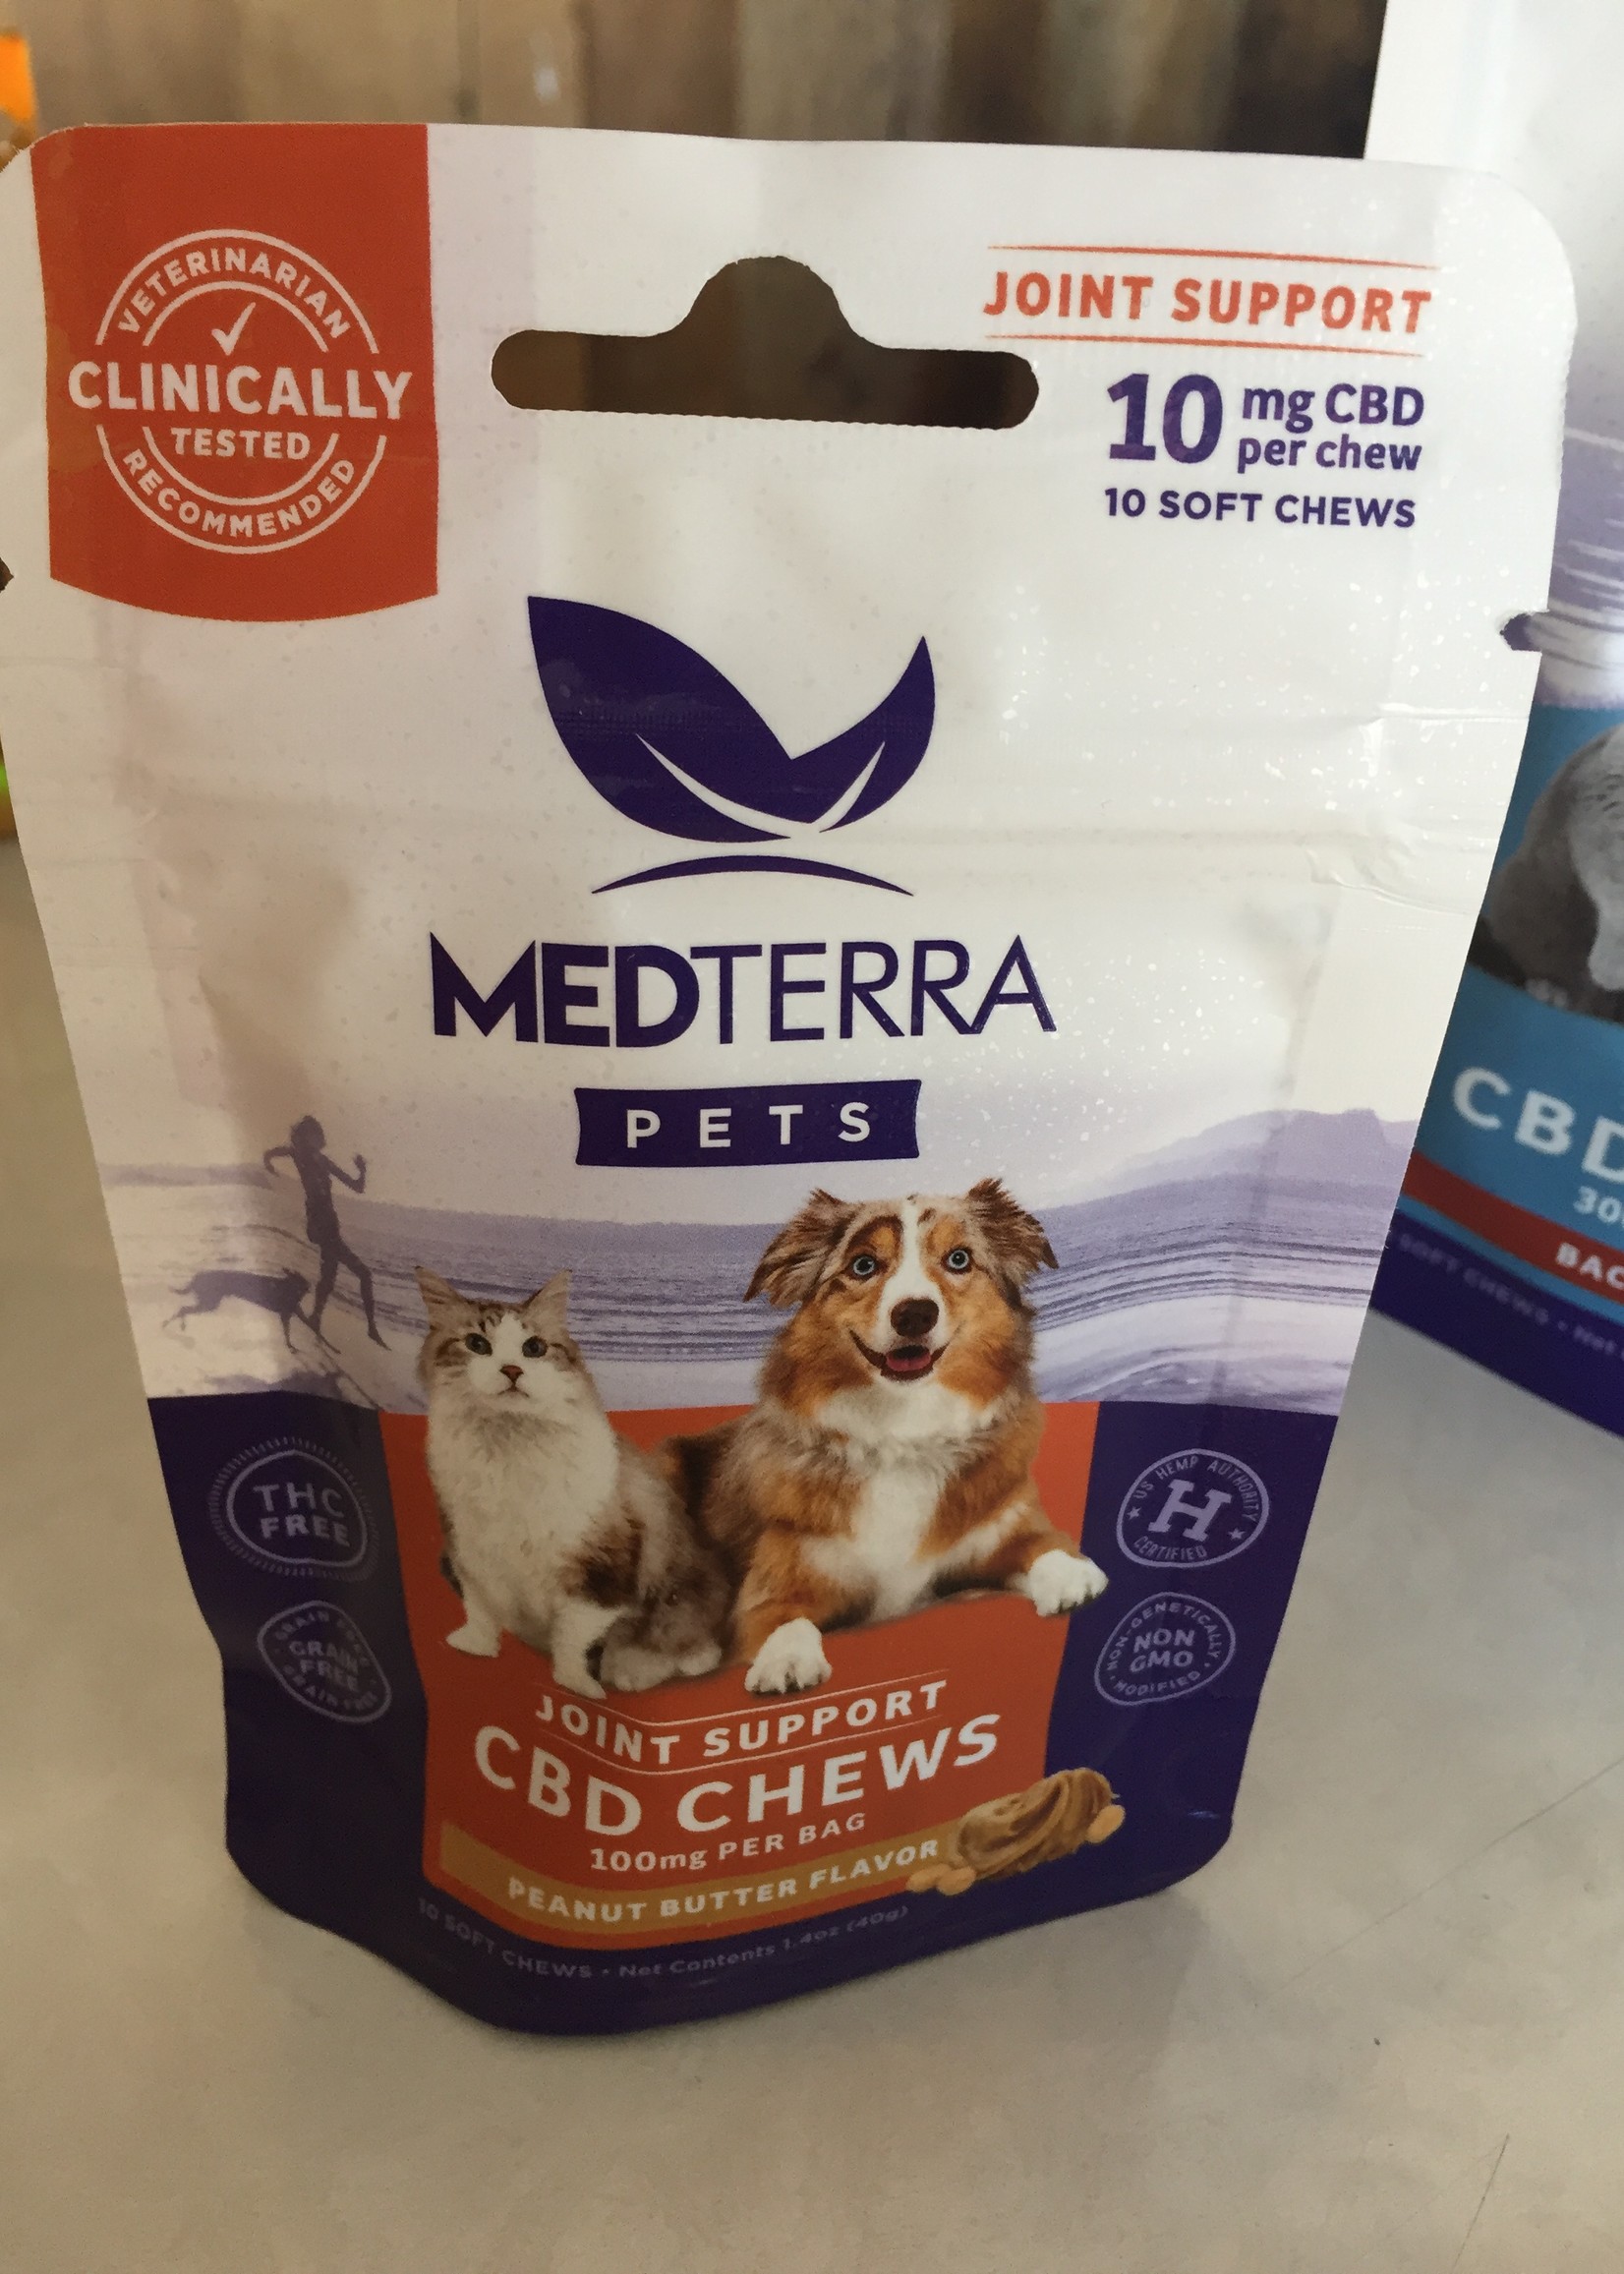 Medterra Dog treats